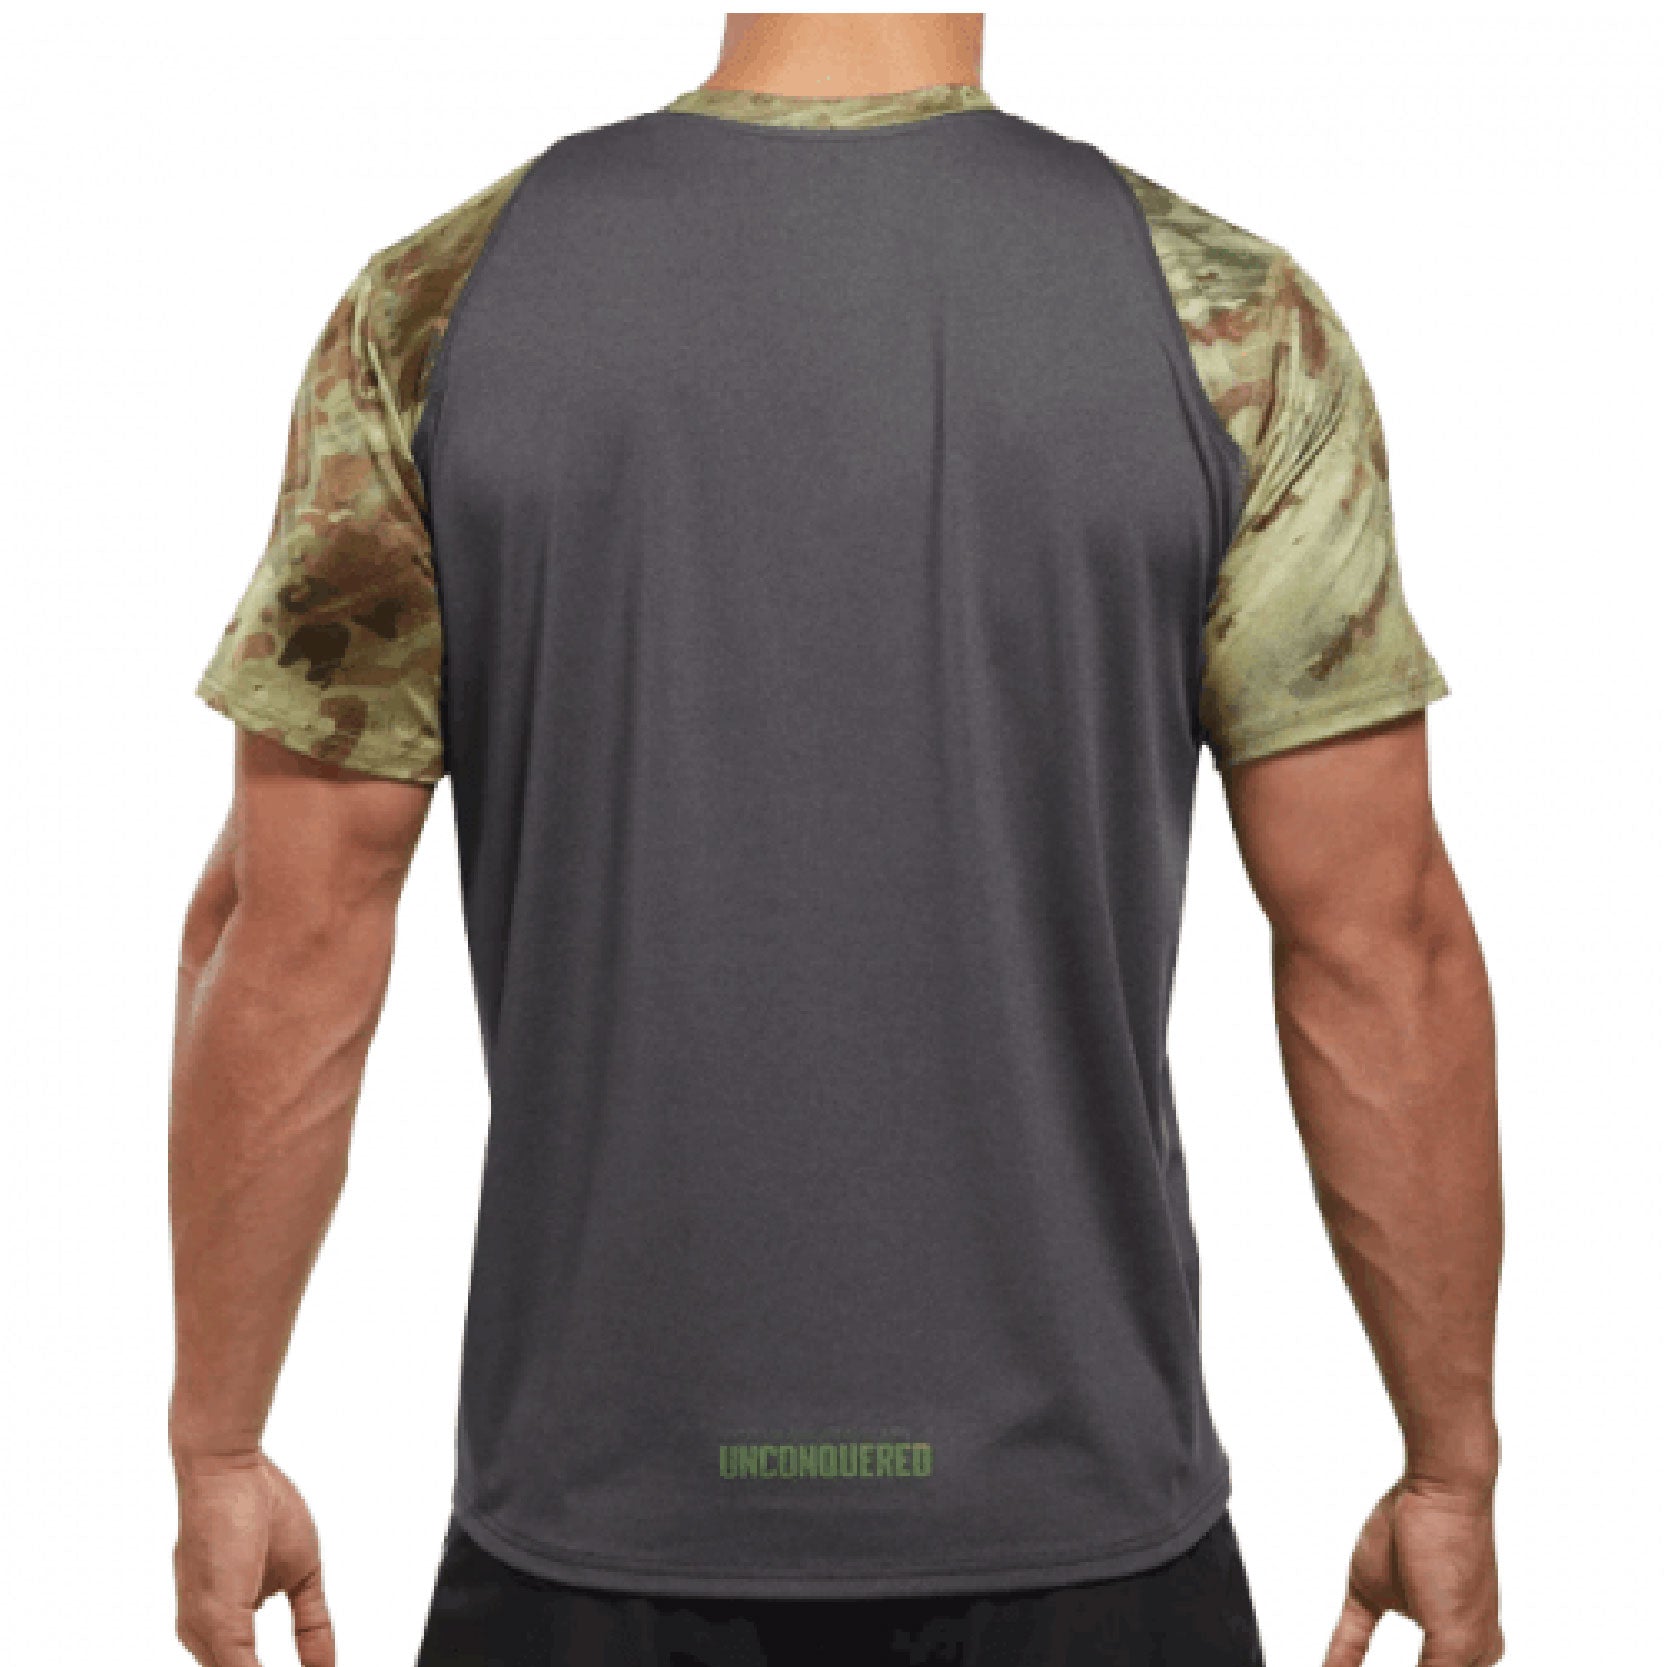 VIKTOS PTXF Shirts [Spartan]